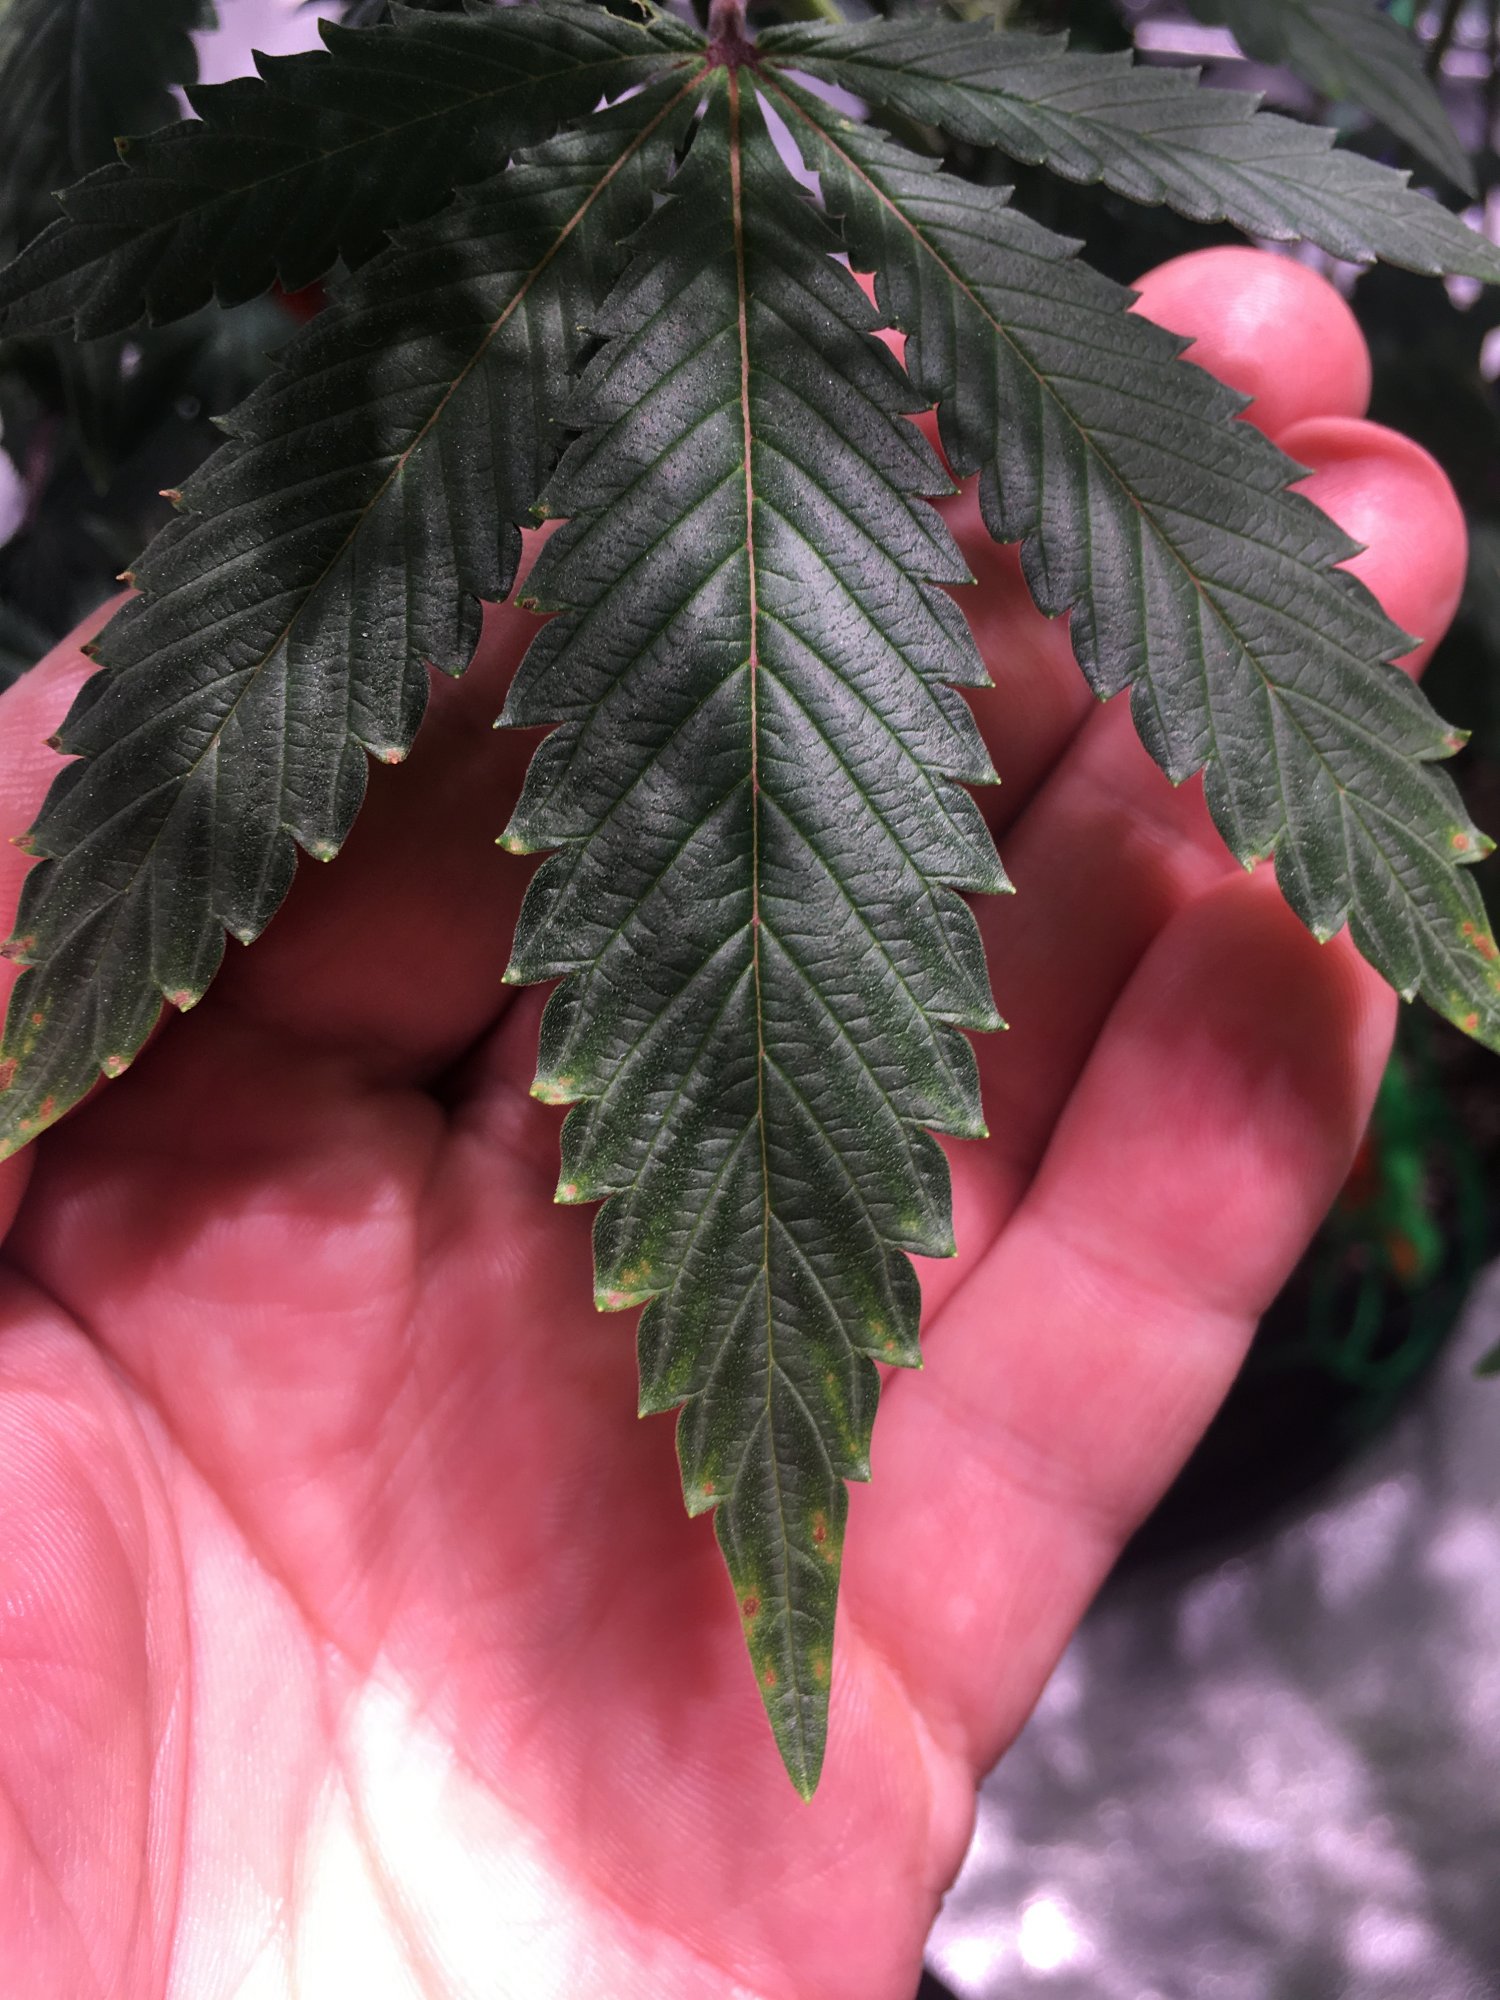 Cal deficiency and dark leaves in 4th week of flower 7